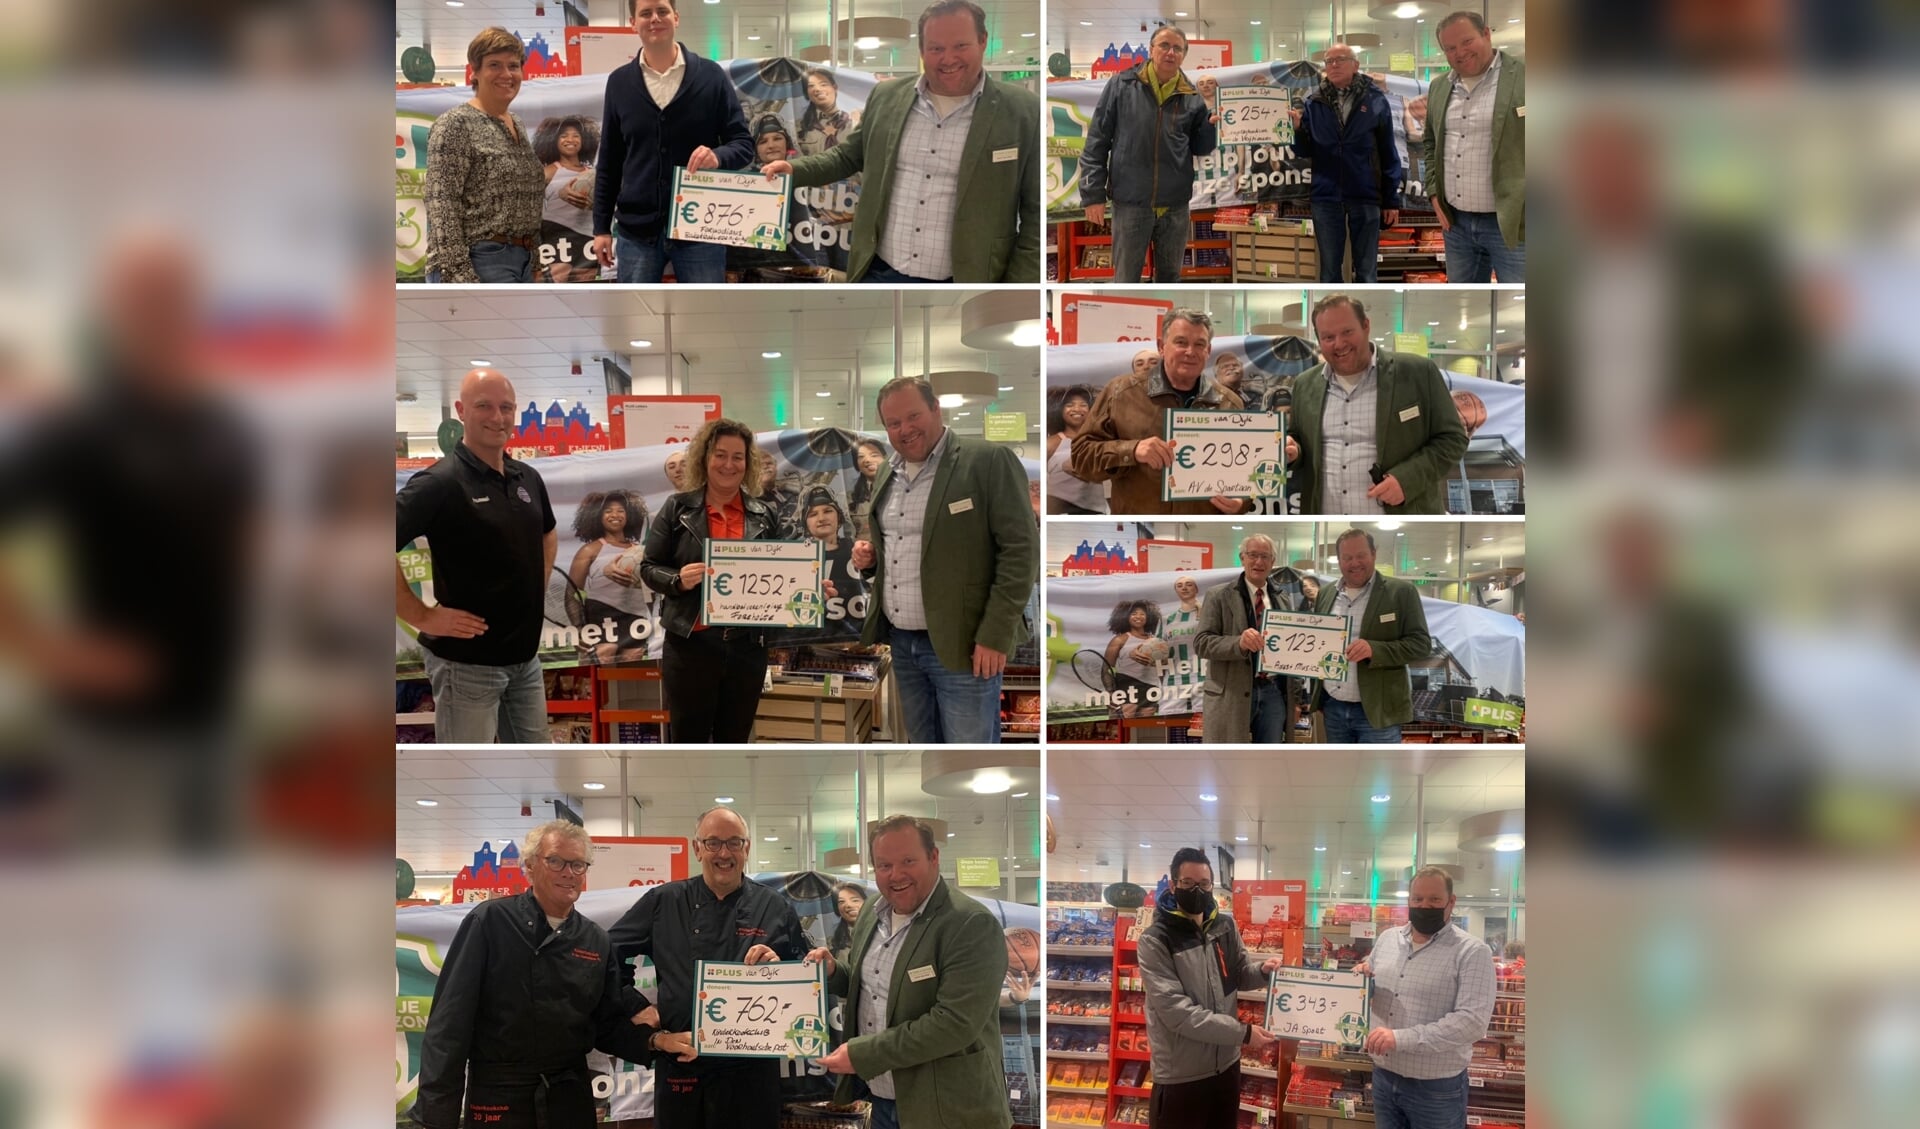 Suoermarkteigenaar Joop van Dijk reikt een deel van de cheques uit aan de vertegenwoordigers van de clubs. | Foto: pr.